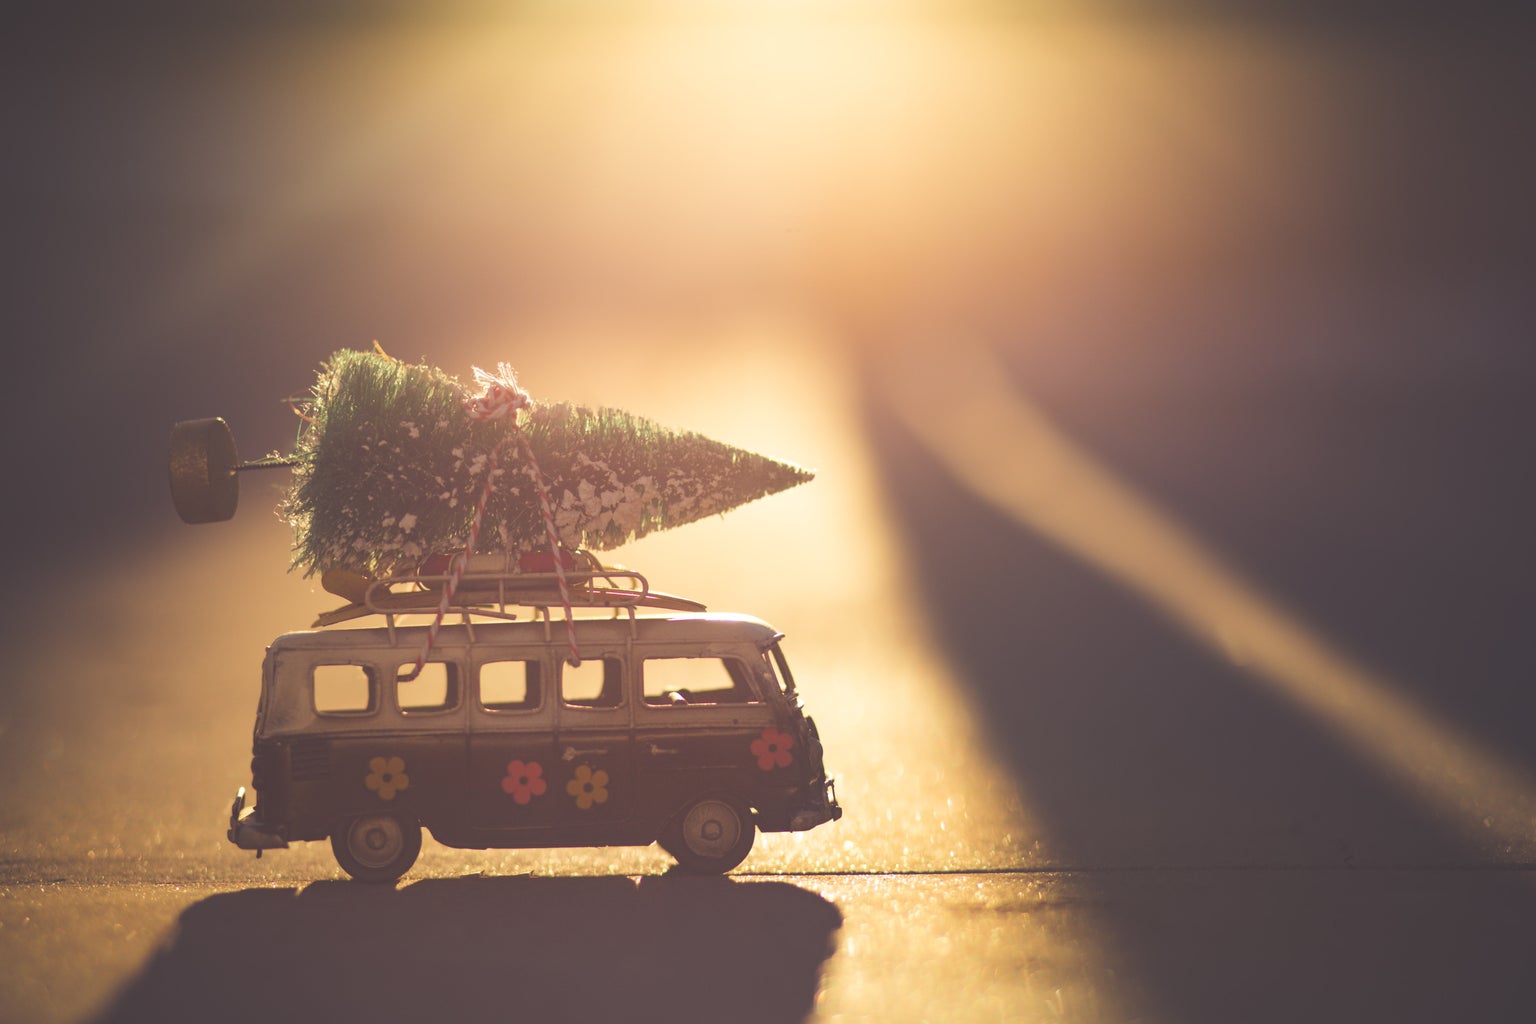 Christmas tree on mini bus